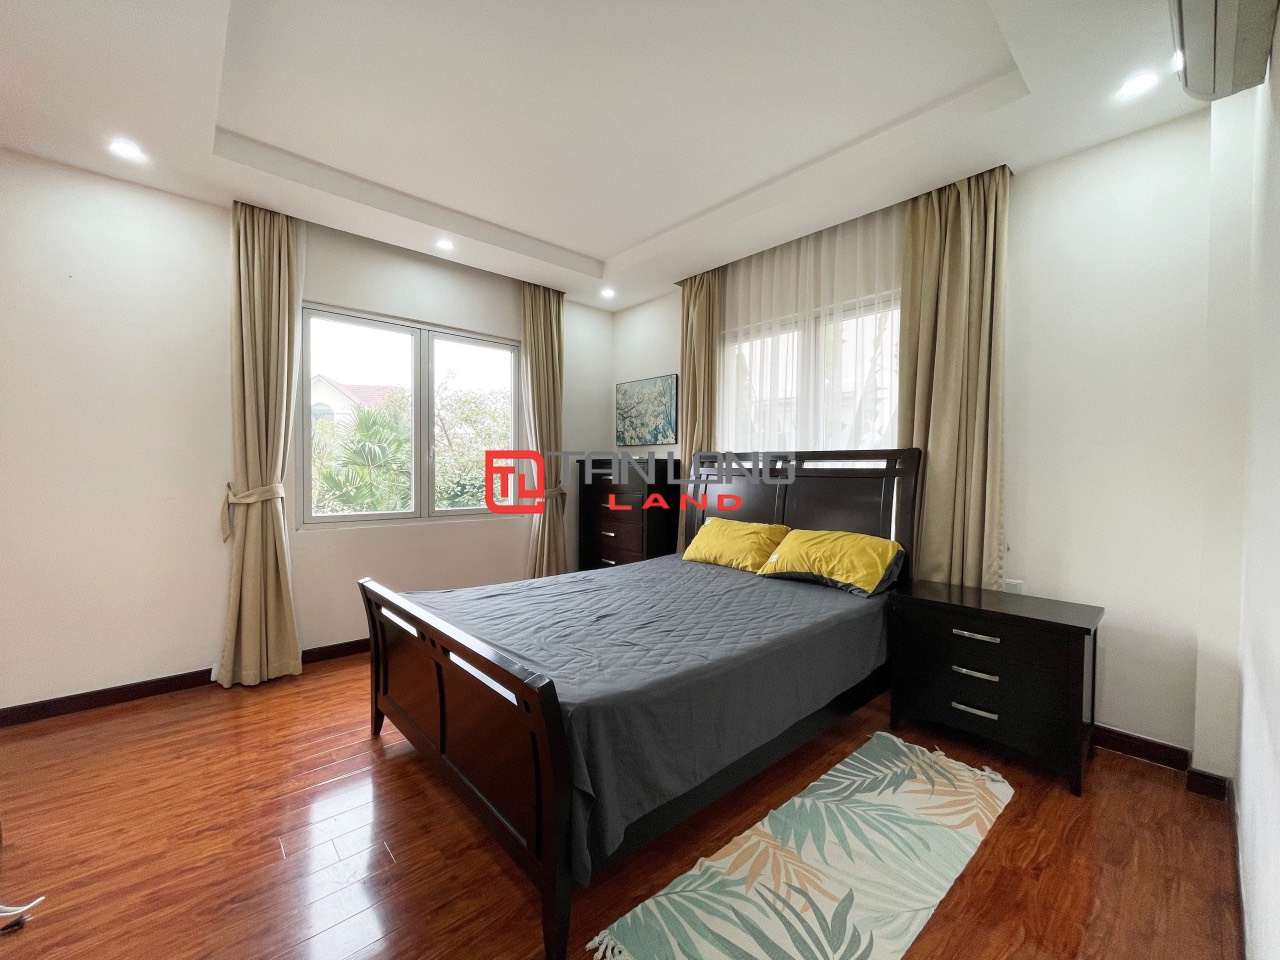 5 Bedrooms Duplex Villa for Rent with Reasonable Price in Vinhomes Riverside Long Bien 7